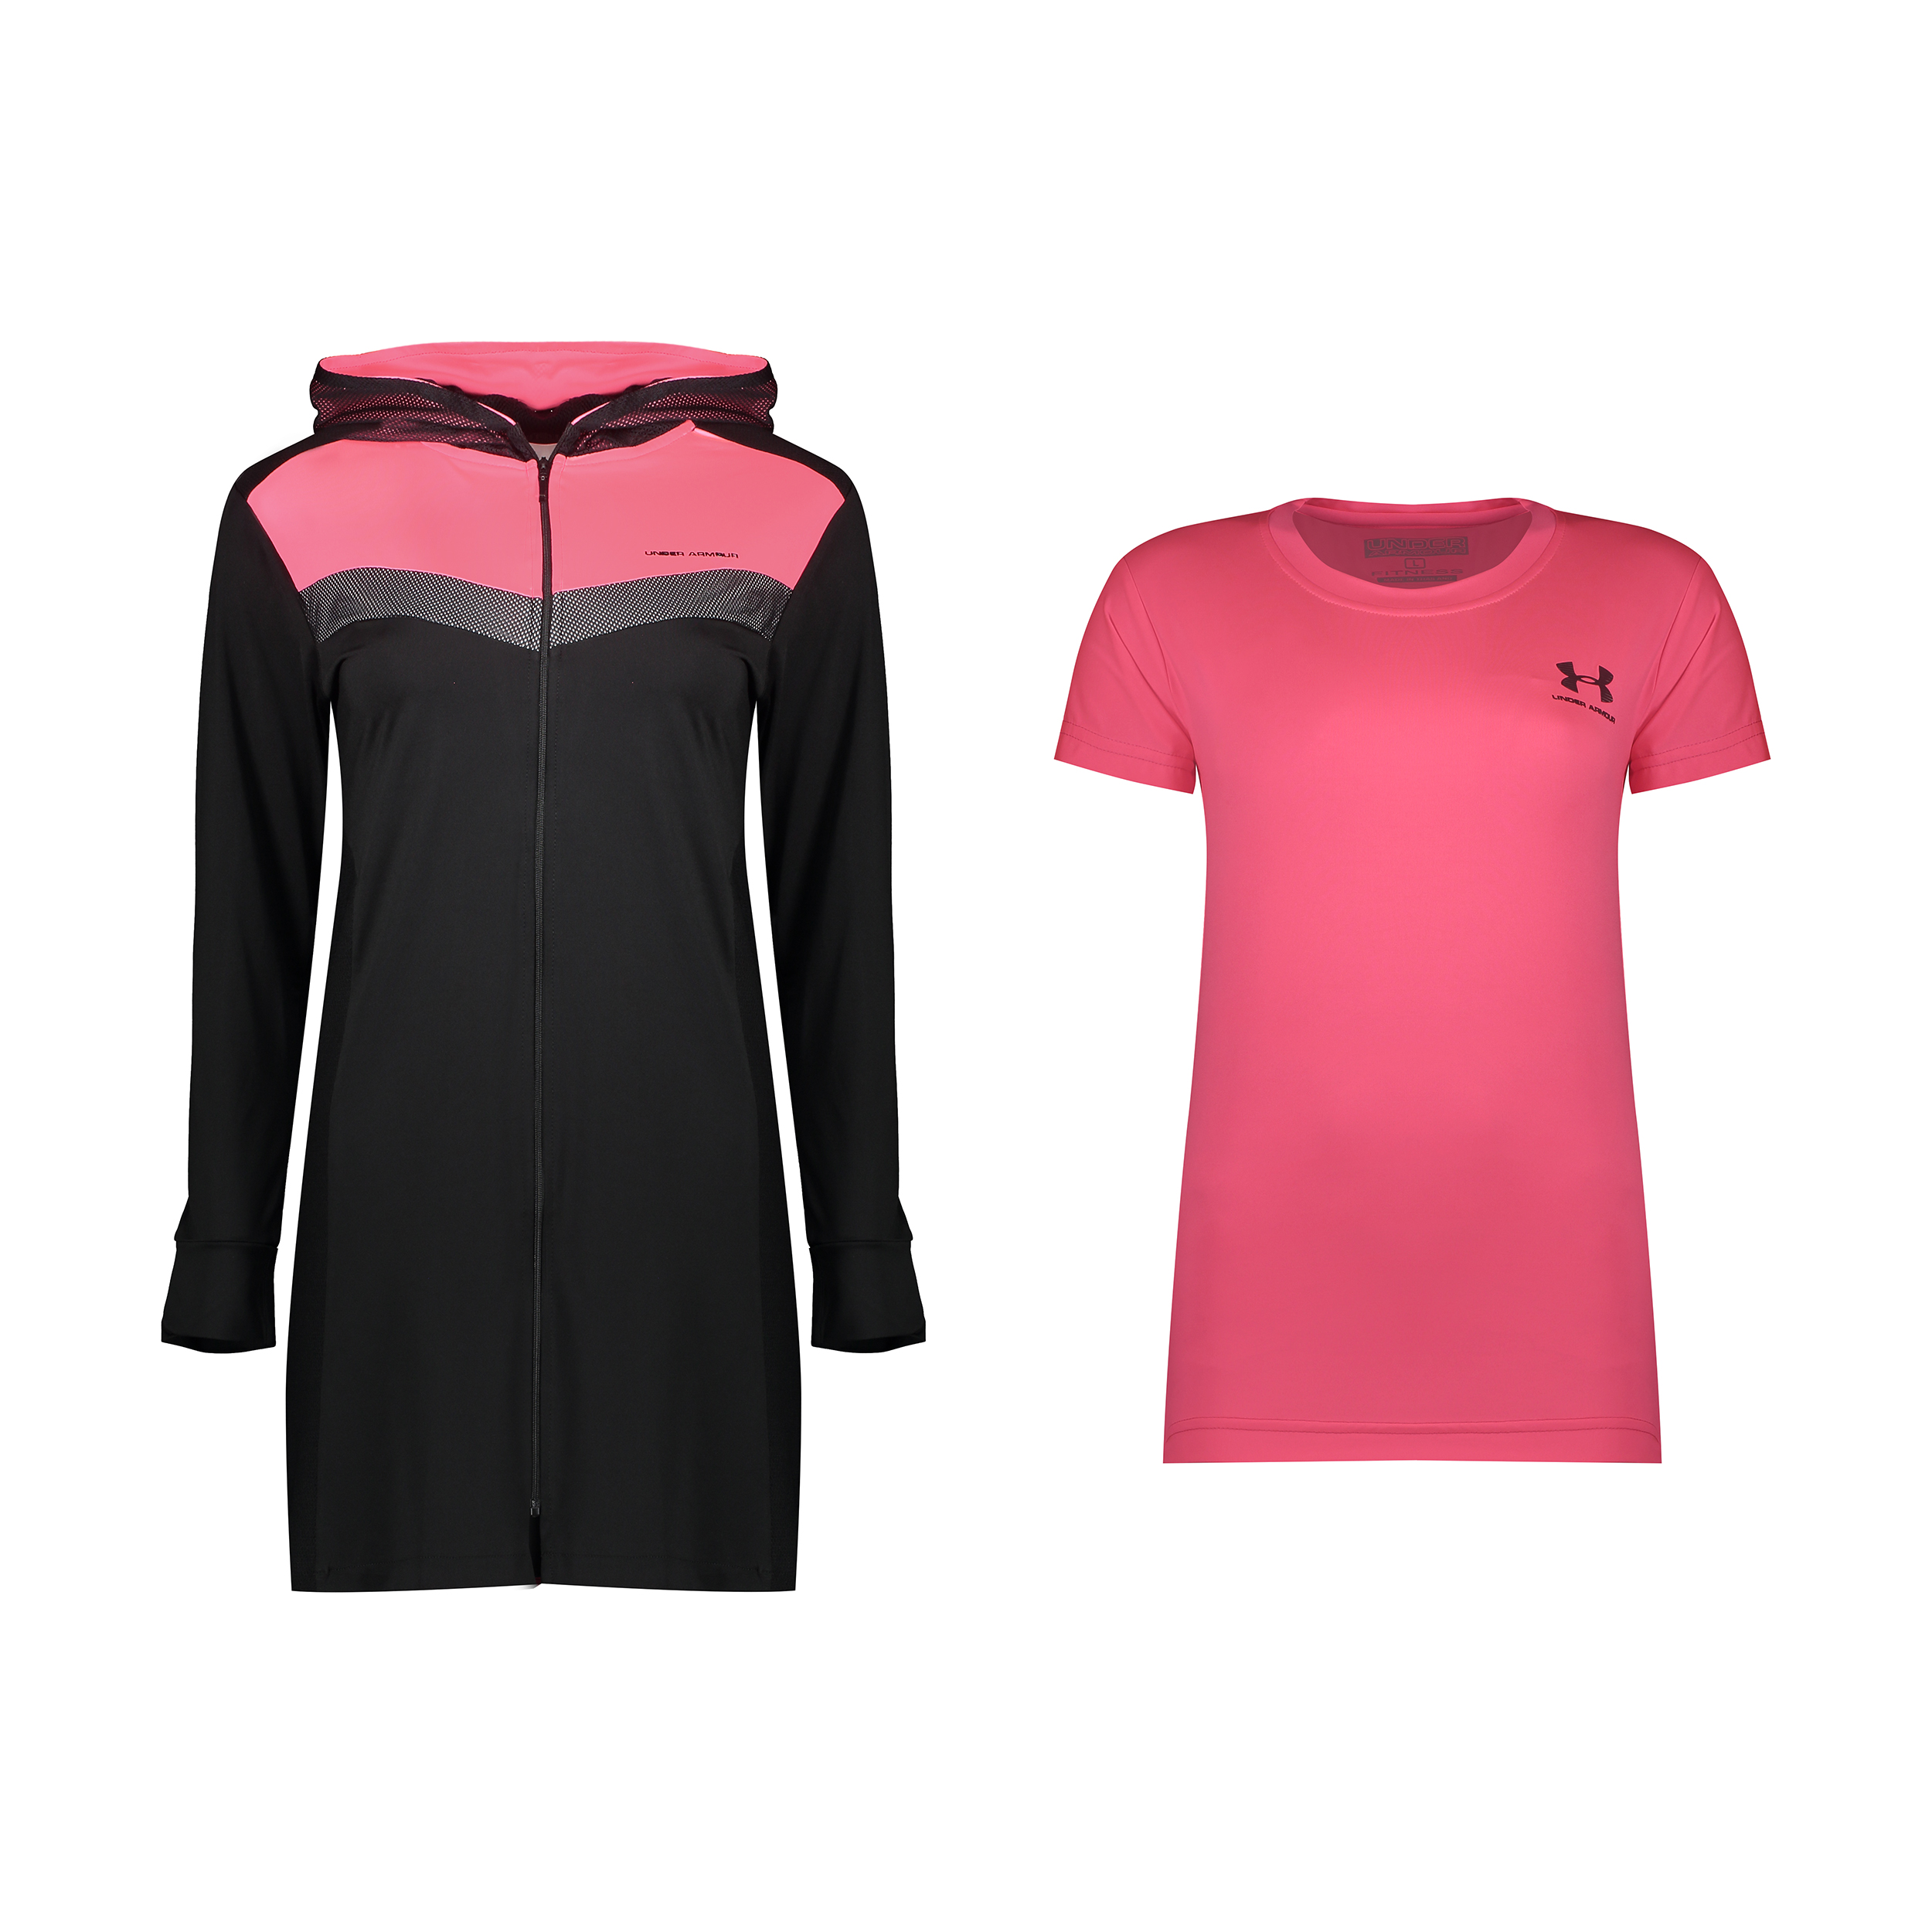 ست گرمکن و تی شرت ورزشی زنانه آندر آرمور کد TH4-0888